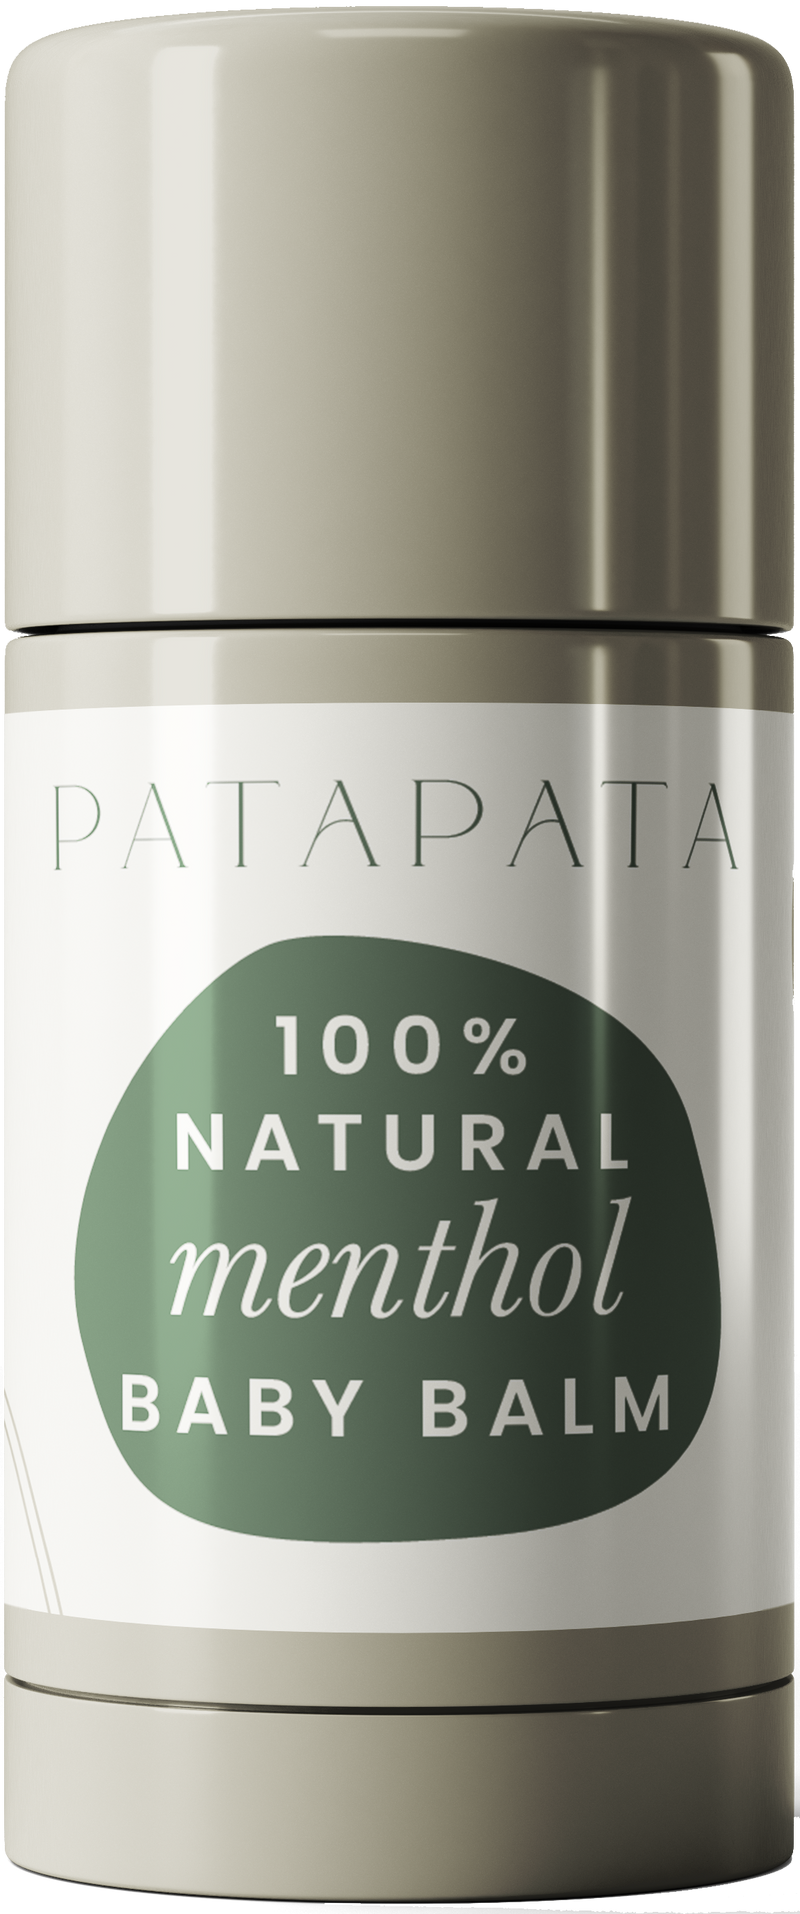 PataPata Natural Menthol Baby Balm